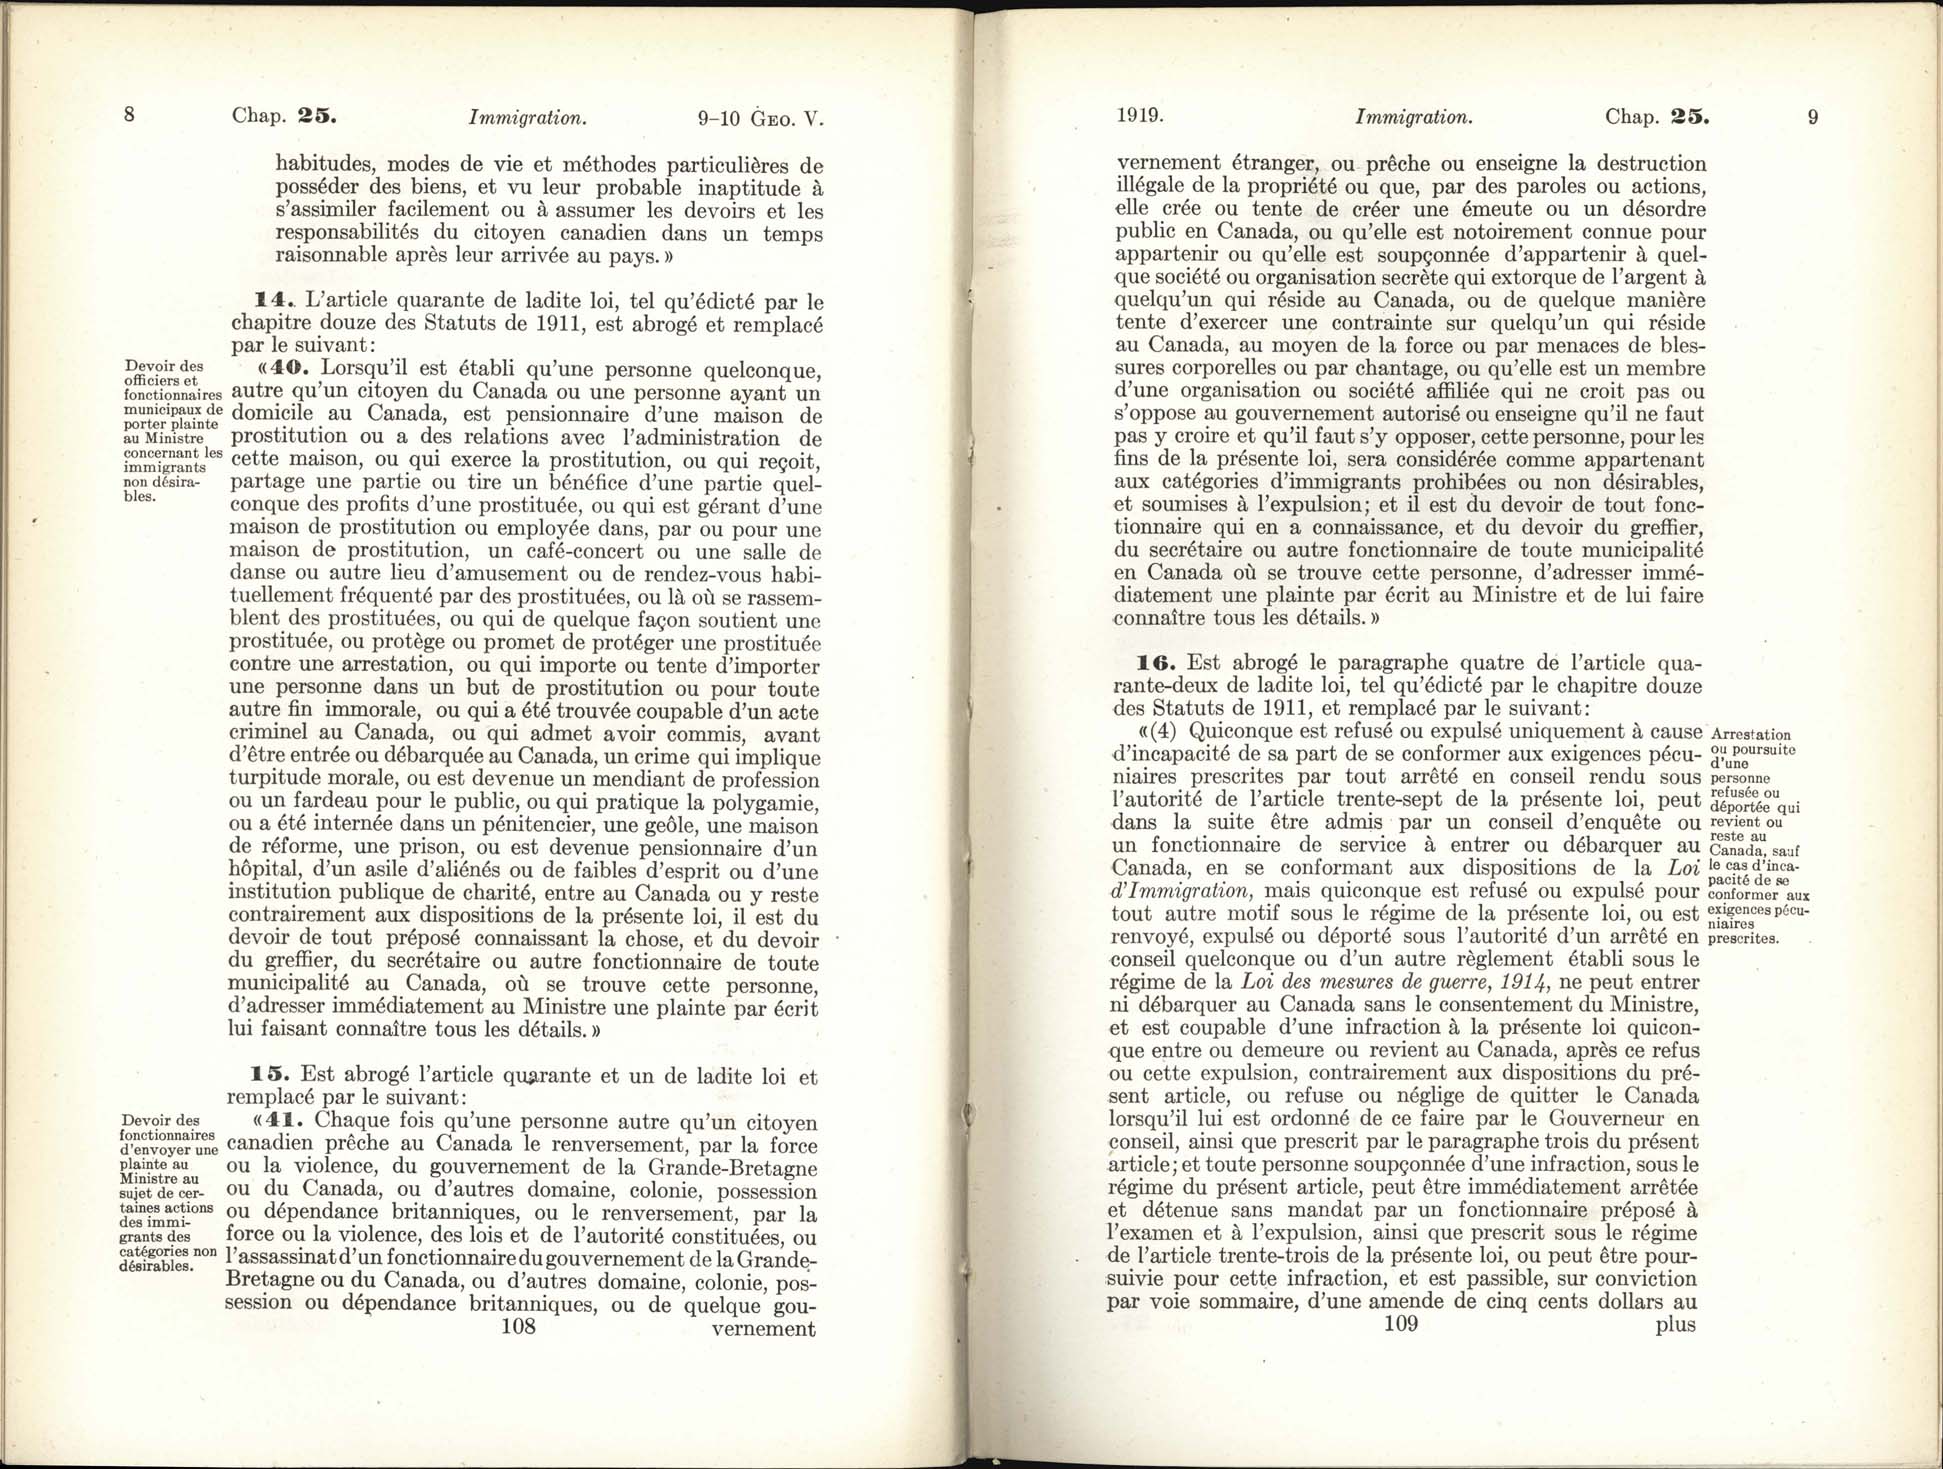 Page 108, 109 Loi de l’immigration amendement, 1919